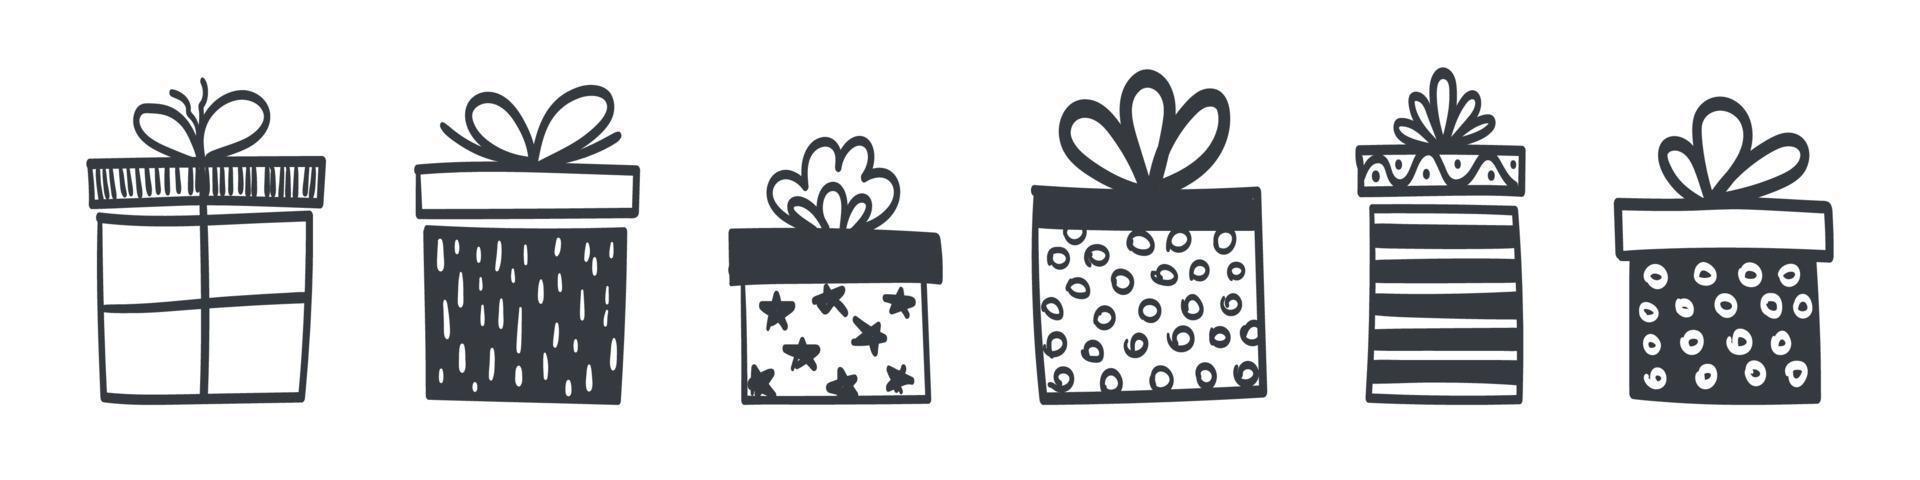 Geschenkbox-Symbole. satz von handgezeichneten geschenkboxen in unterschiedlichen stilen und formen. Vektor-Illustration vektor